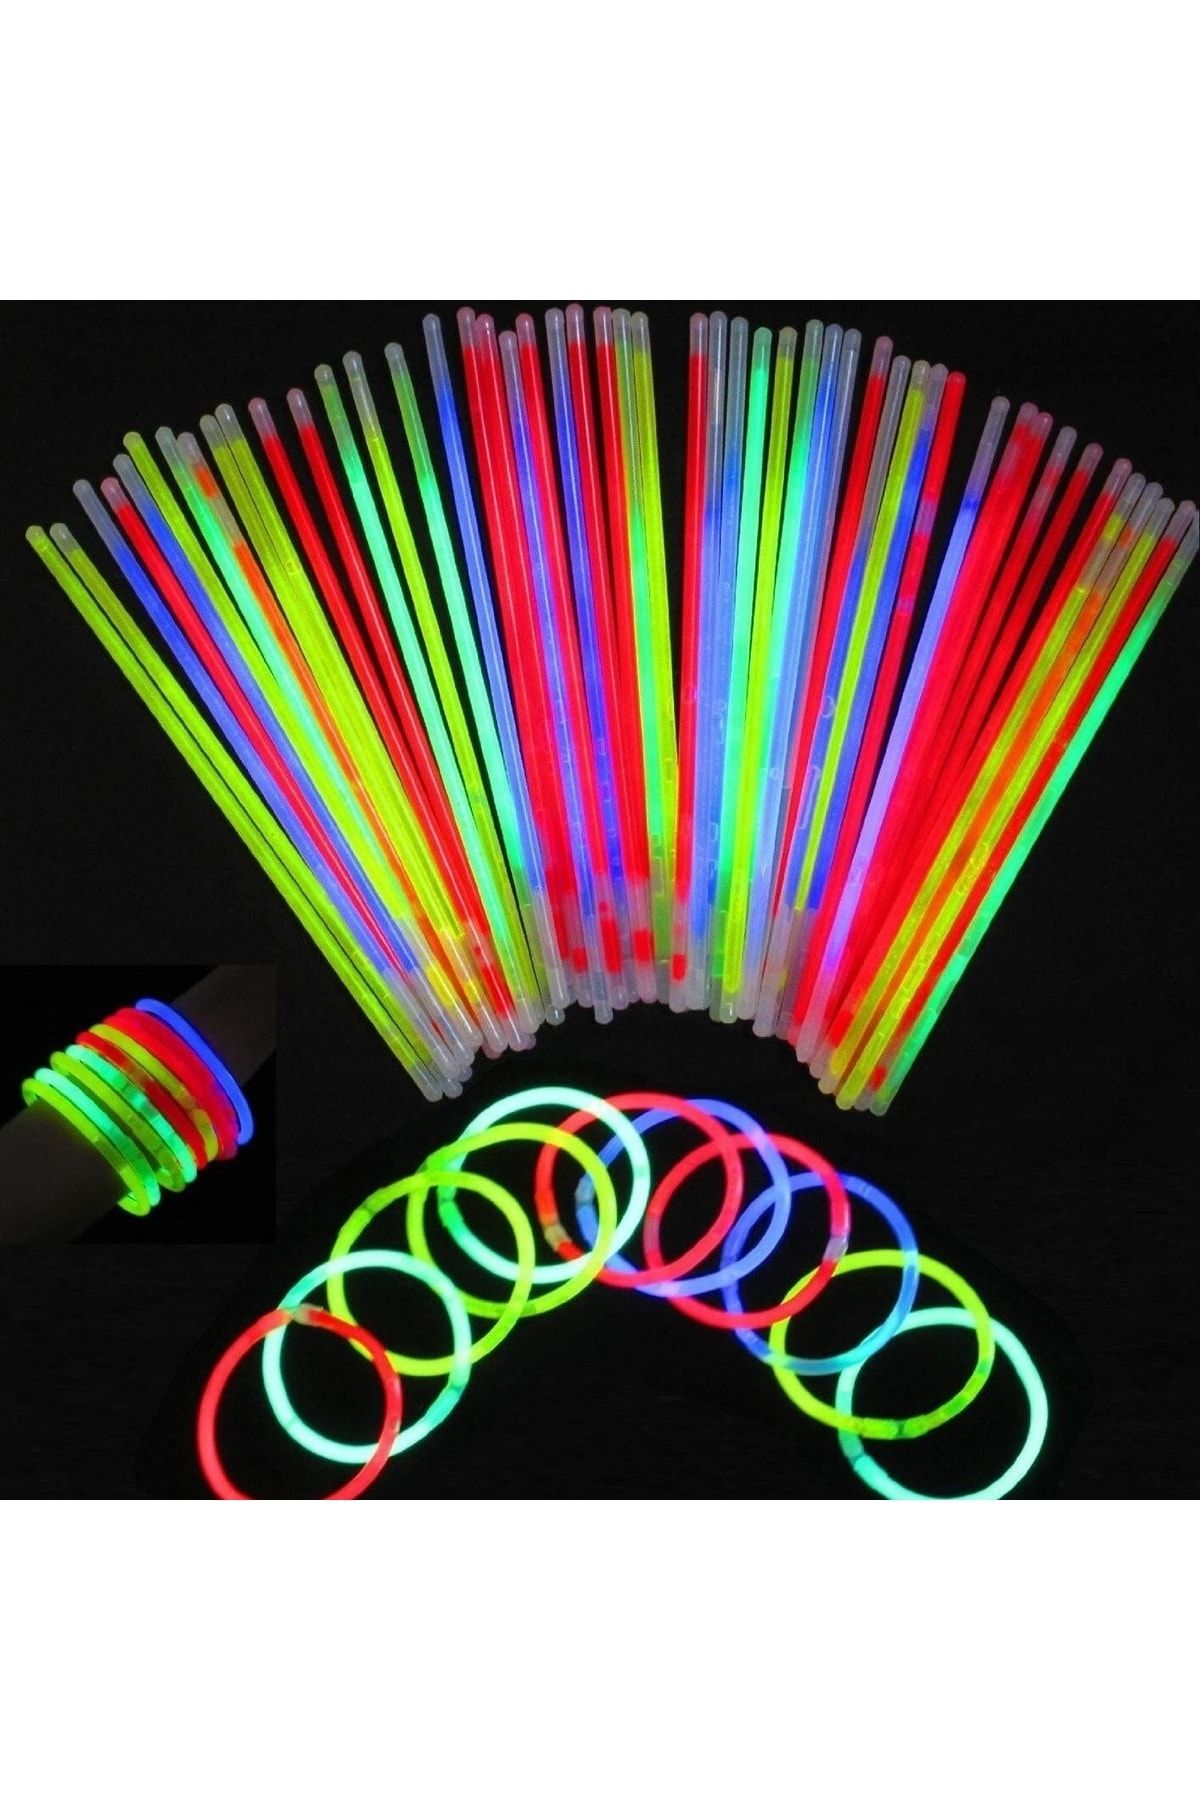 pazariz Glow Stick Fosforlu Neon Çubuk Bileklik Parti Konser Bilekliği 1 Adet